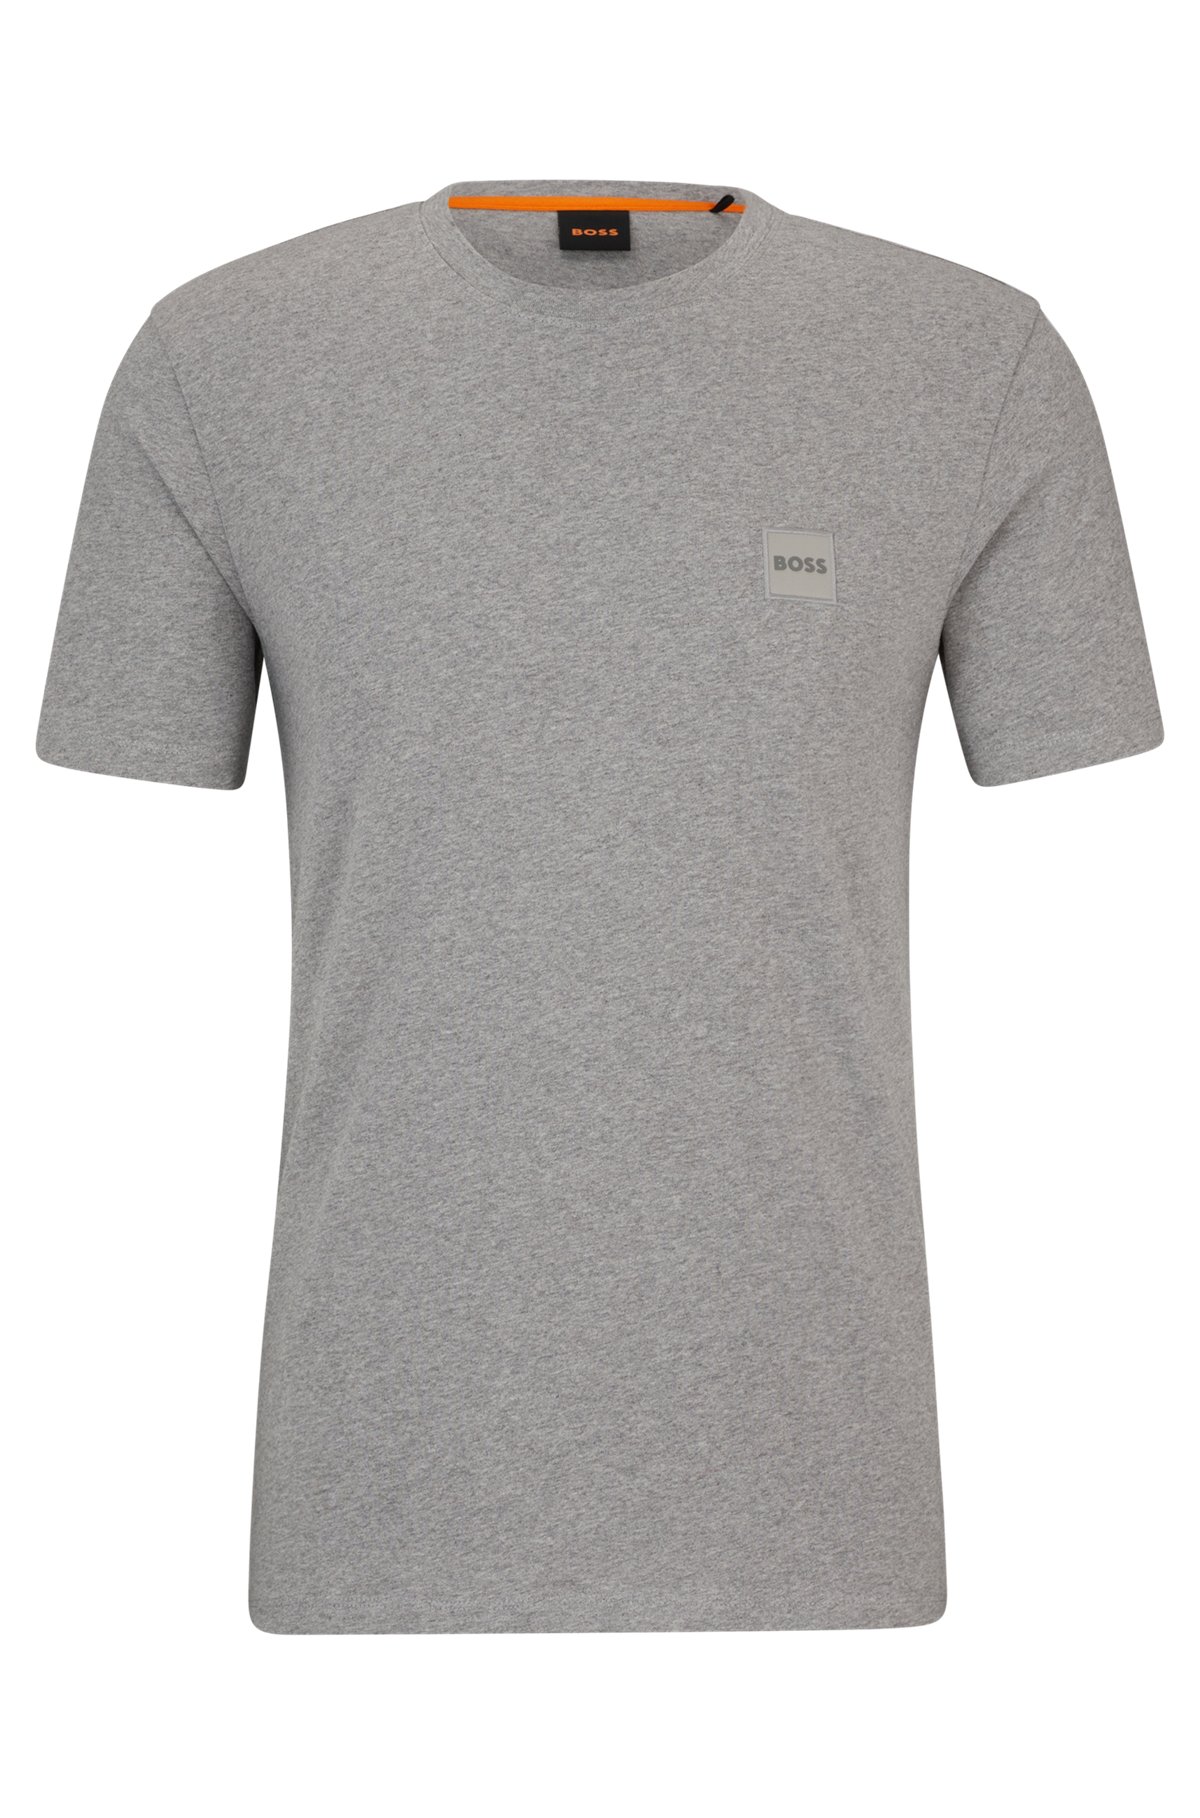 T-shirt Relaxed Fit en jersey de coton avec patch logo, Gris chiné